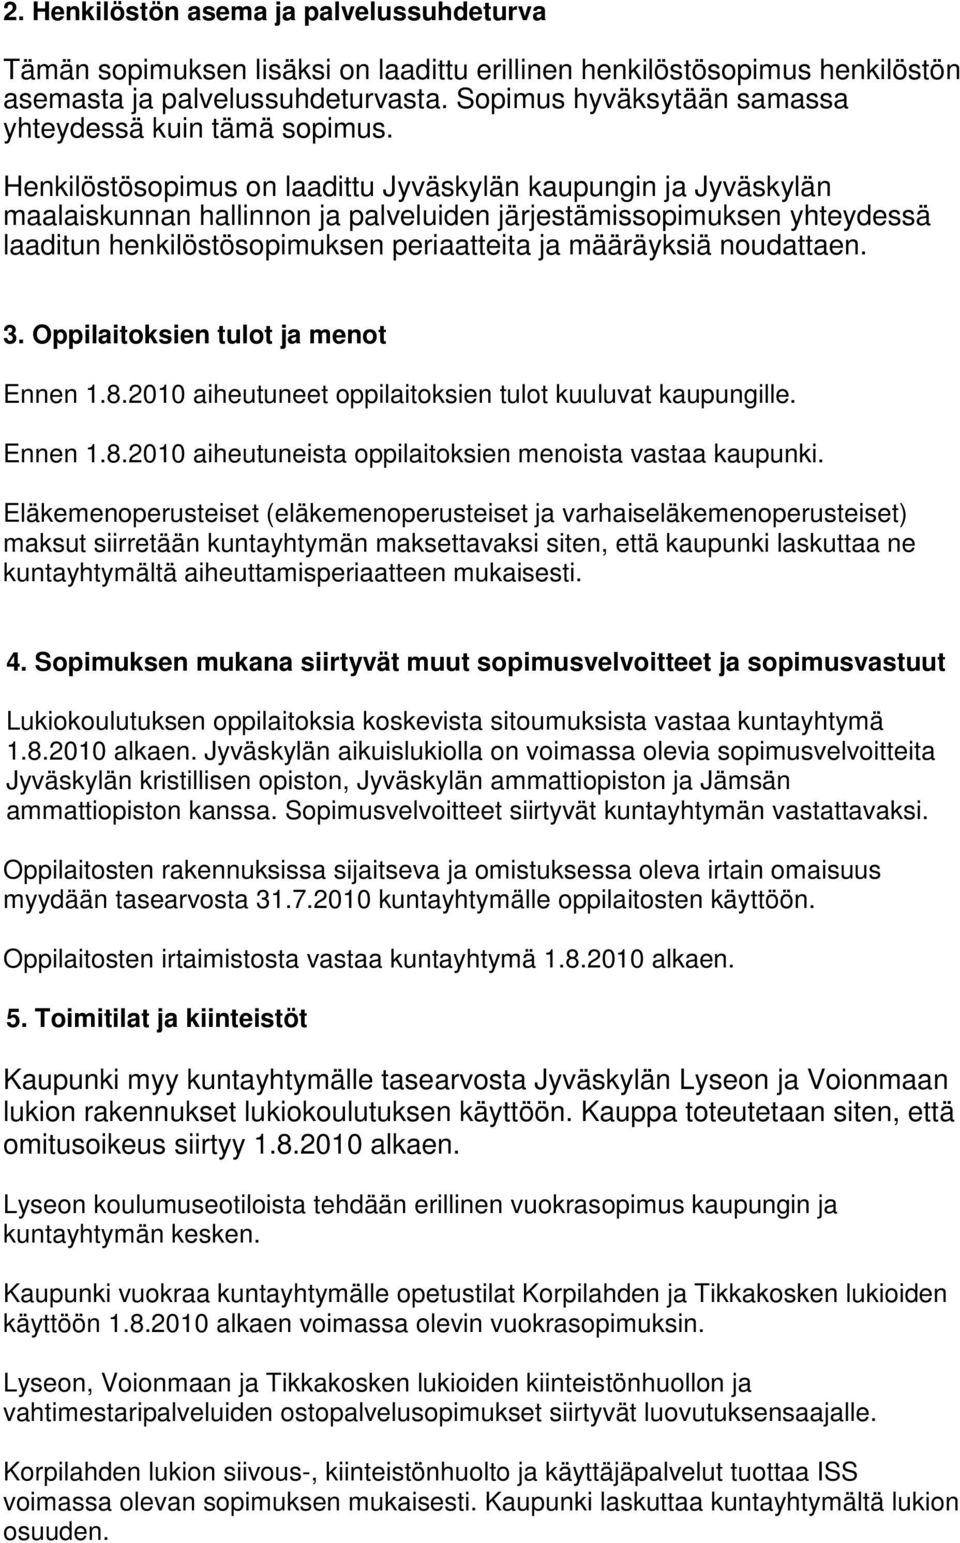 Henkilöstösopimus on laadittu Jyväskylän kaupungin ja Jyväskylän maalaiskunnan hallinnon ja palveluiden järjestämissopimuksen yhteydessä laaditun henkilöstösopimuksen periaatteita ja määräyksiä